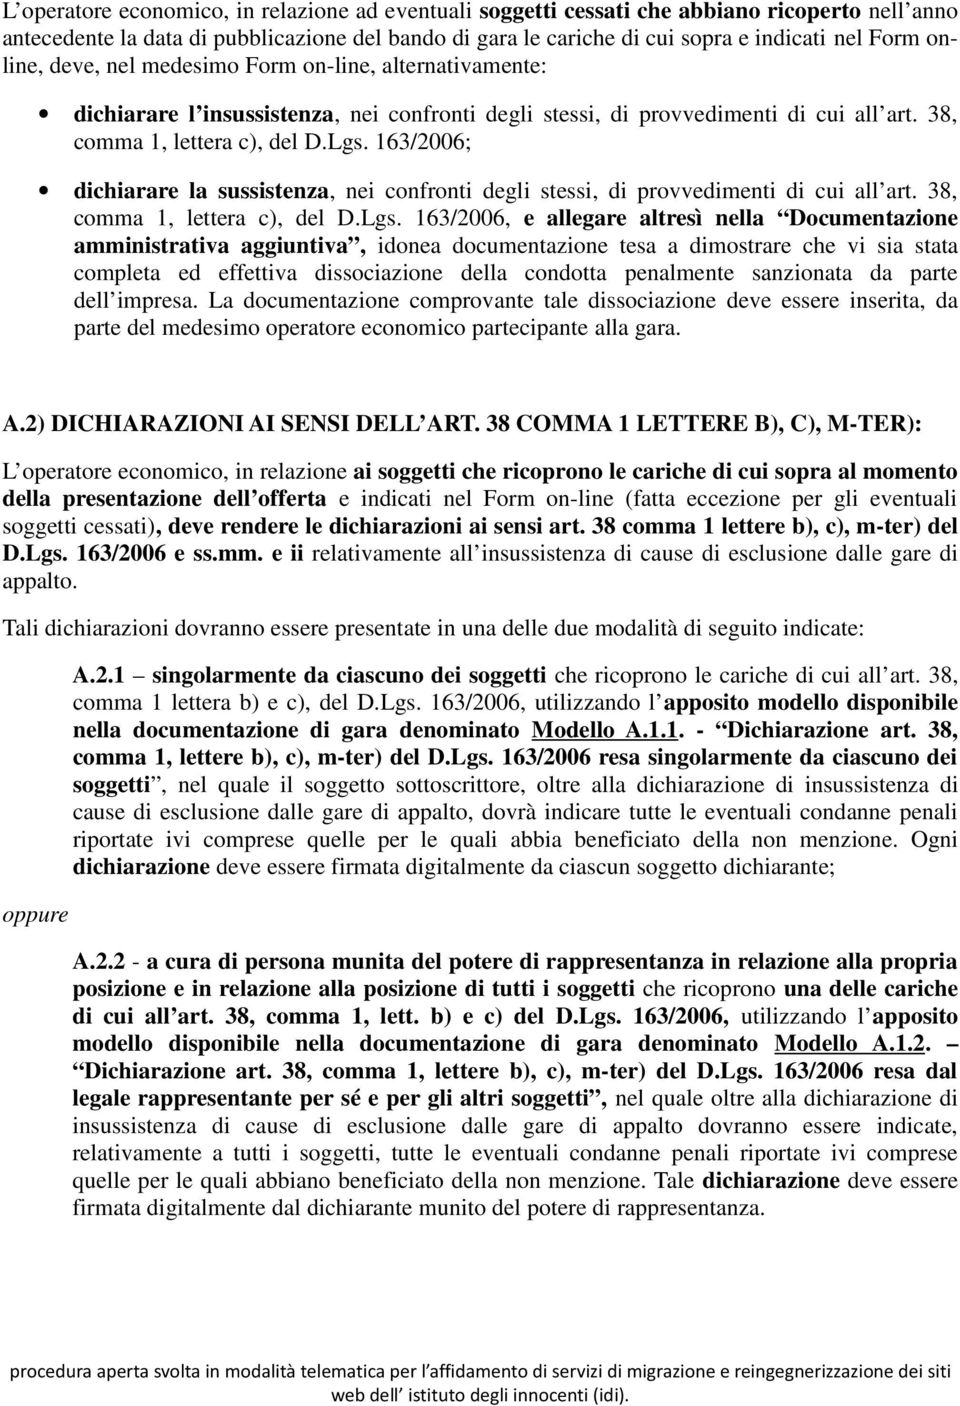 163/2006; dichiarare la sussistenza, nei confronti degli stessi, di provvedimenti di cui all art. 38, comma 1, lettera c), del D.Lgs.